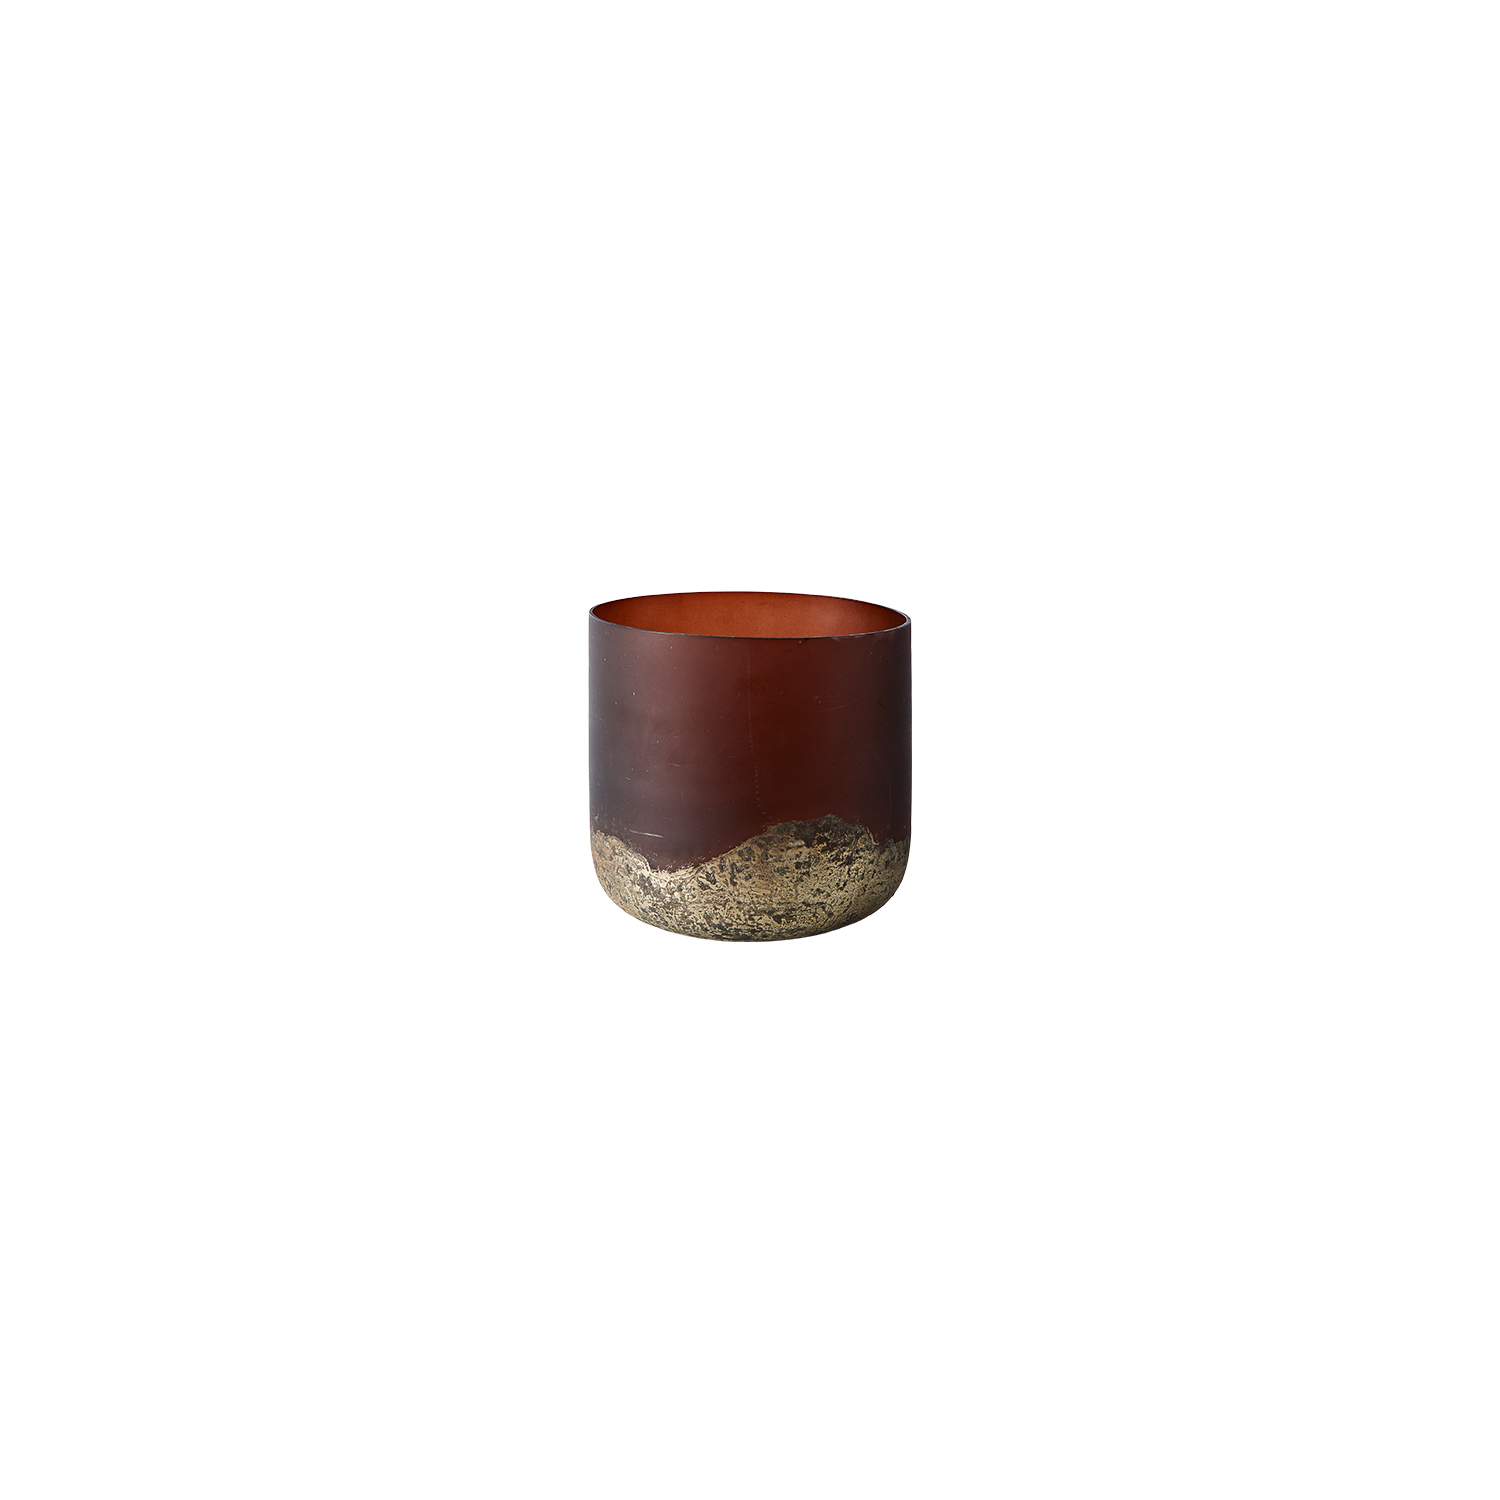 7: Muubs - Vase Lana 14 - Brown/Gold (9190002207)